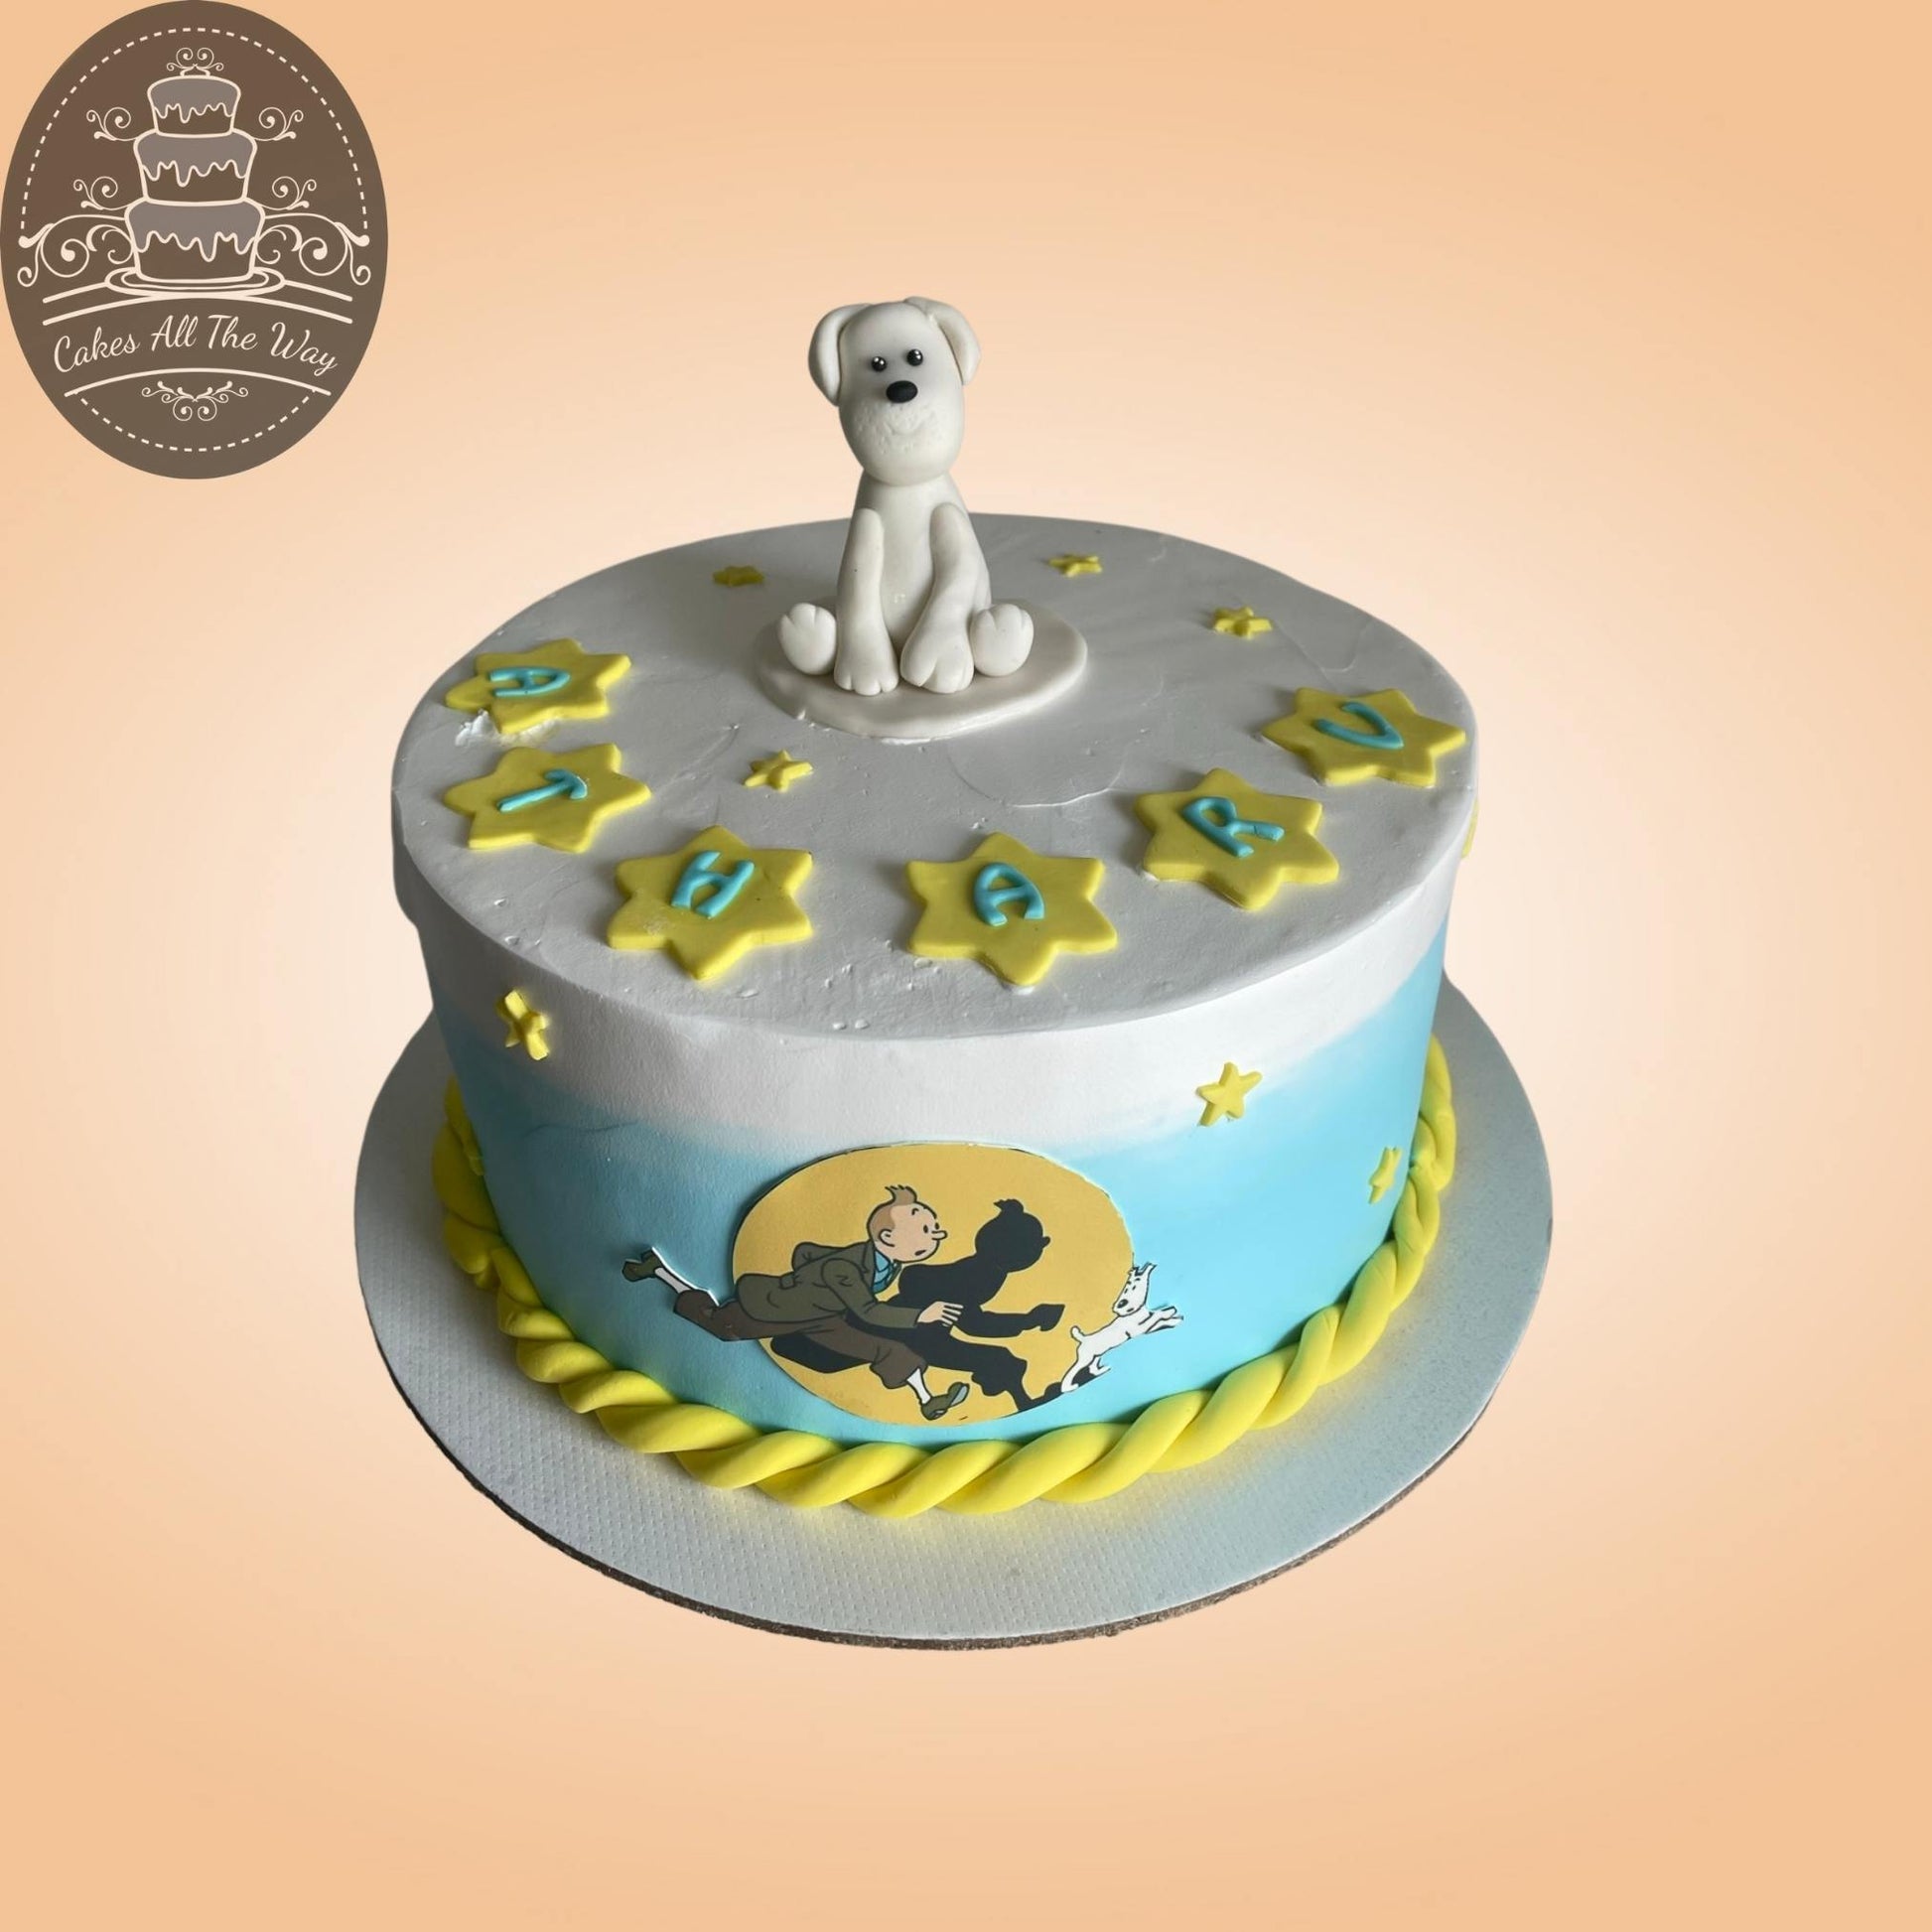 Tintin Theme Cake